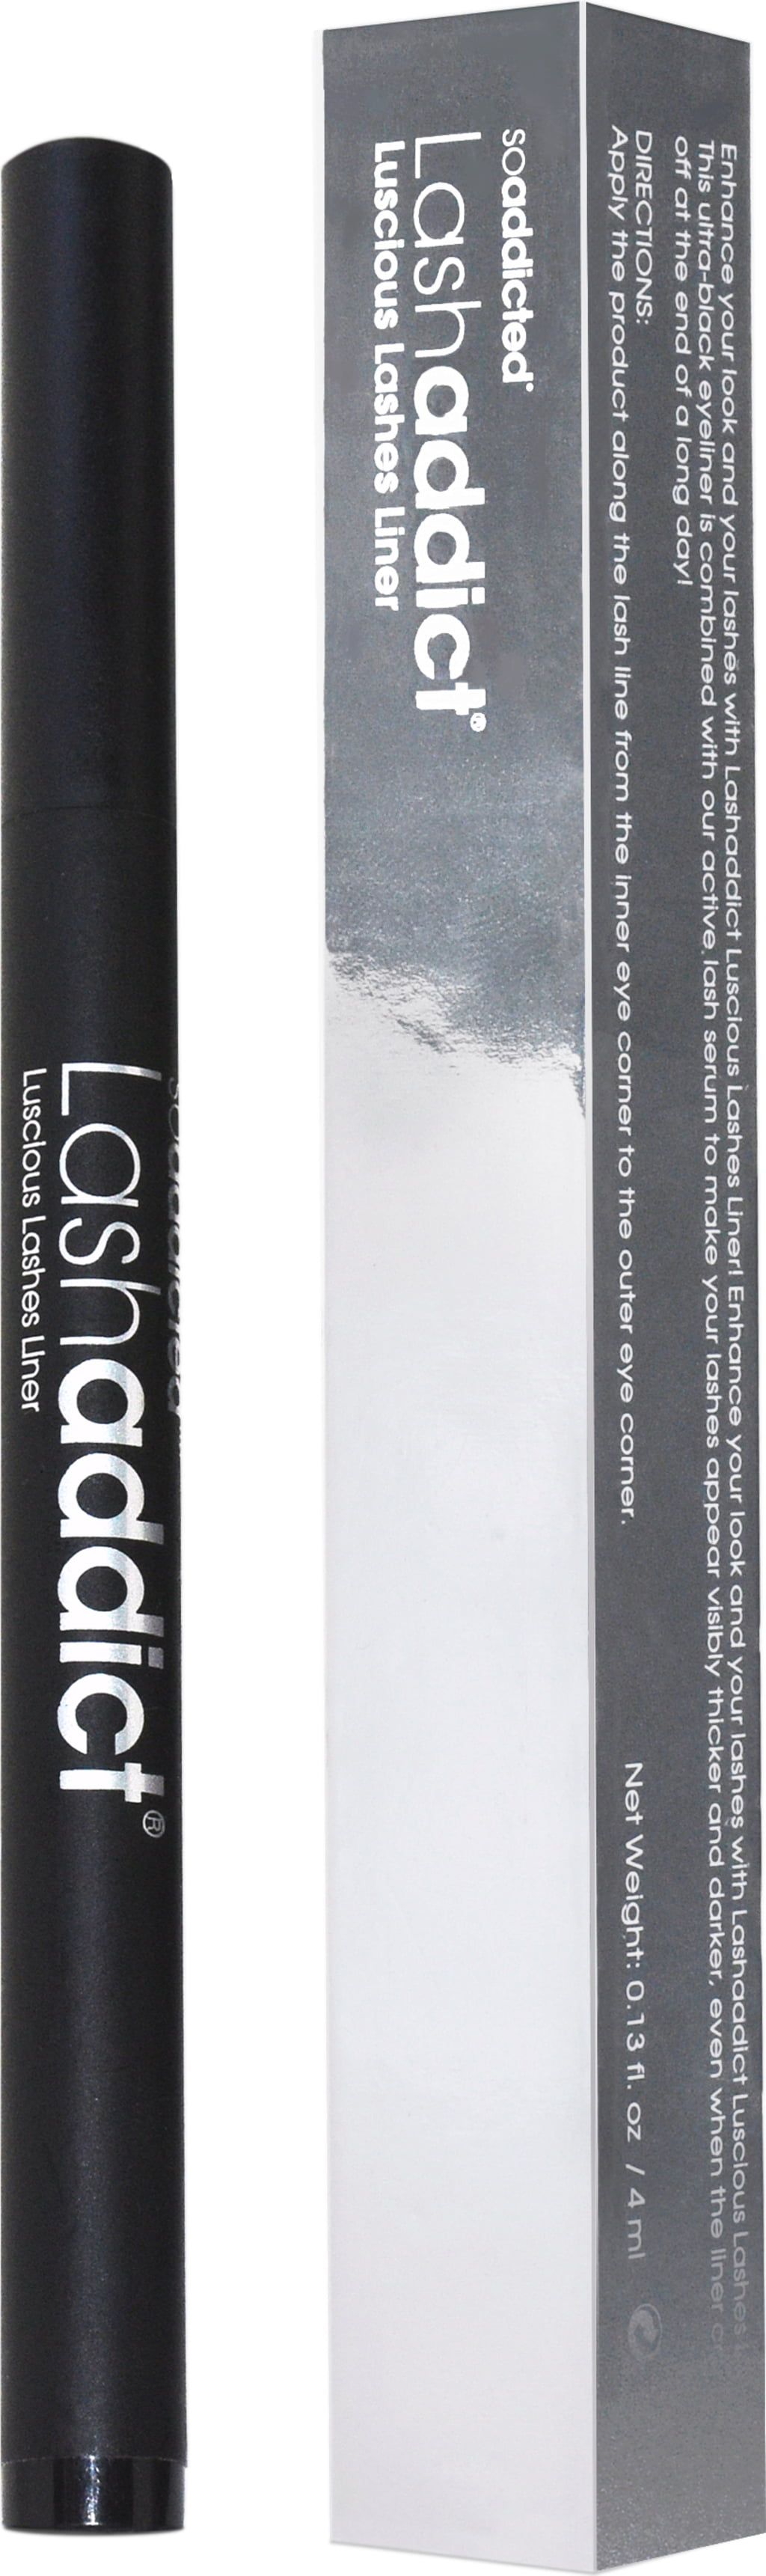 Soaddicted Lashaddict Luscious Lashes Liner, 4 ml - Cosmeterie